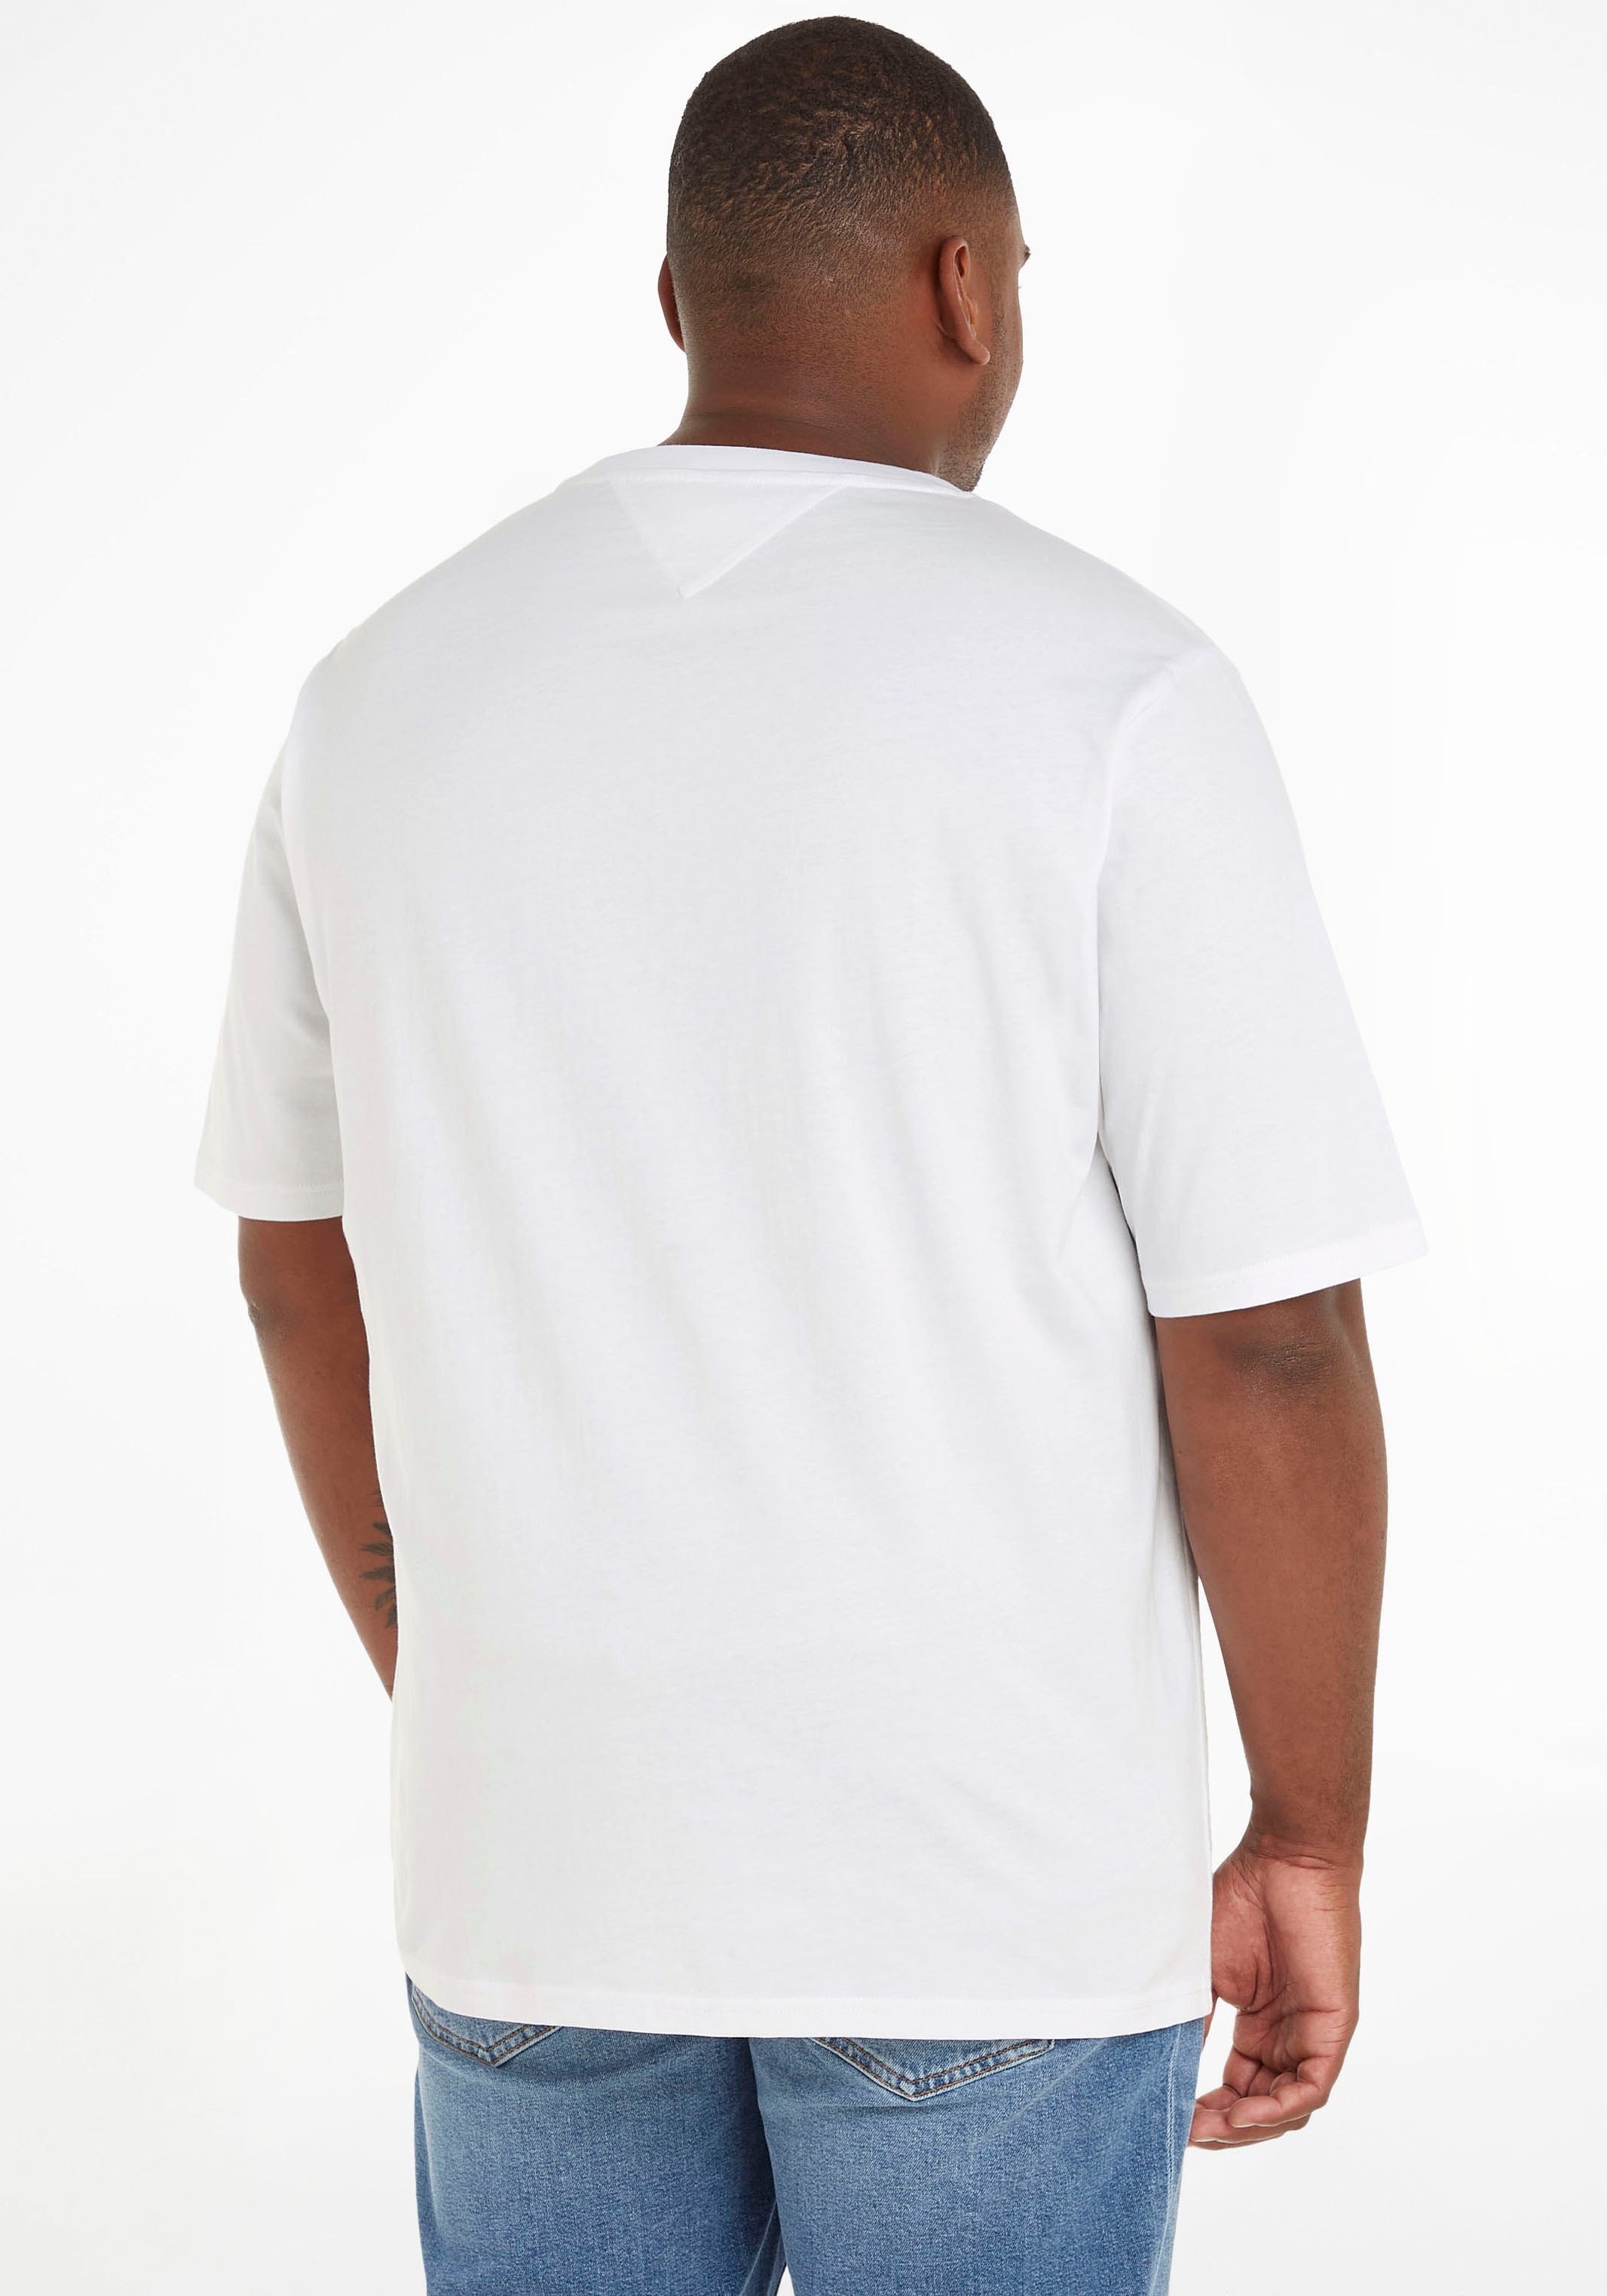 versandkostenfrei Shirts shoppen Mindestbestellwert - ➤ ohne